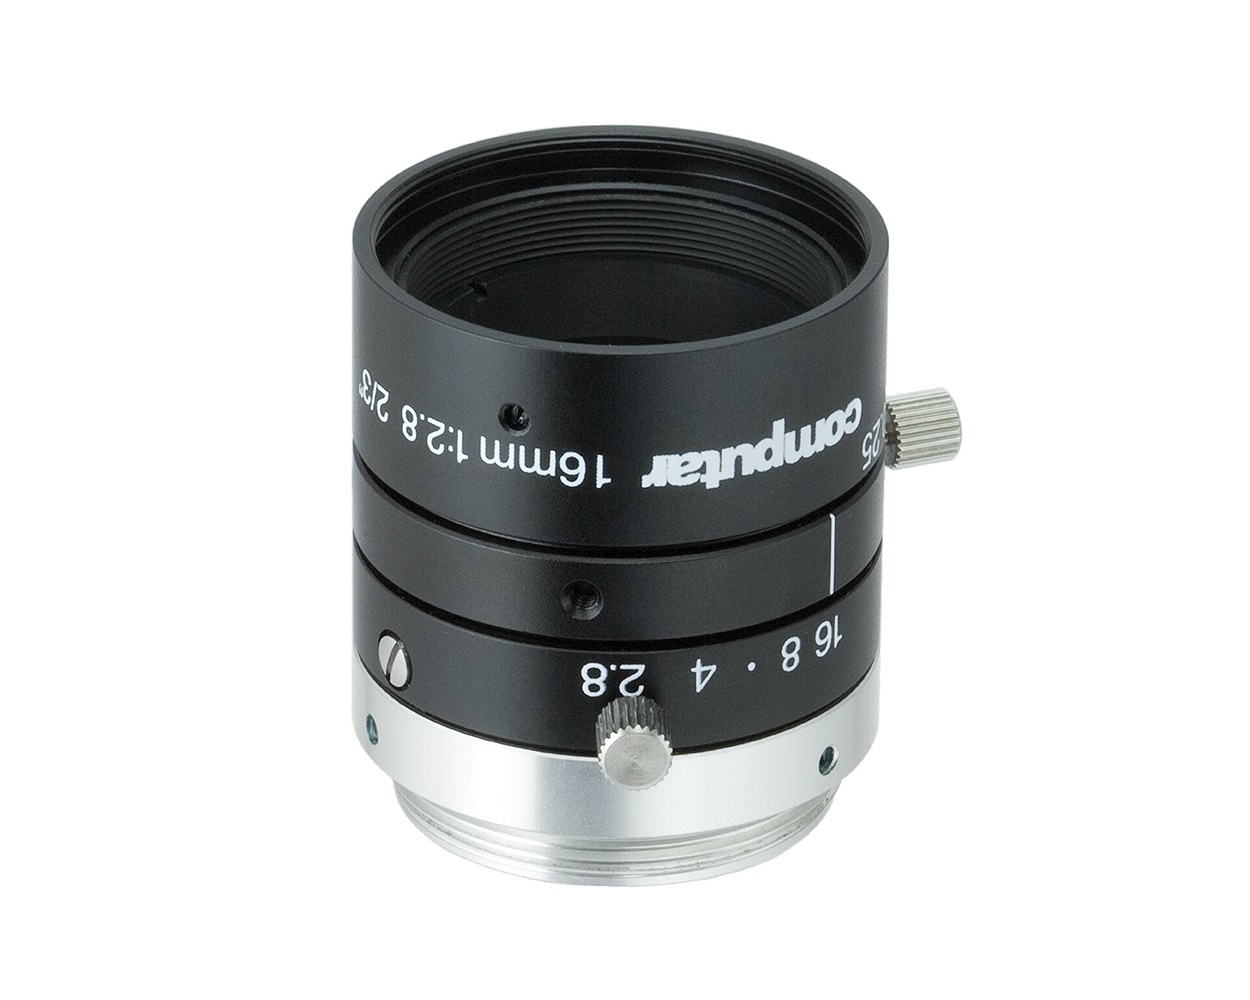 Ống kính - Lens camera Computar M1628-MPW3